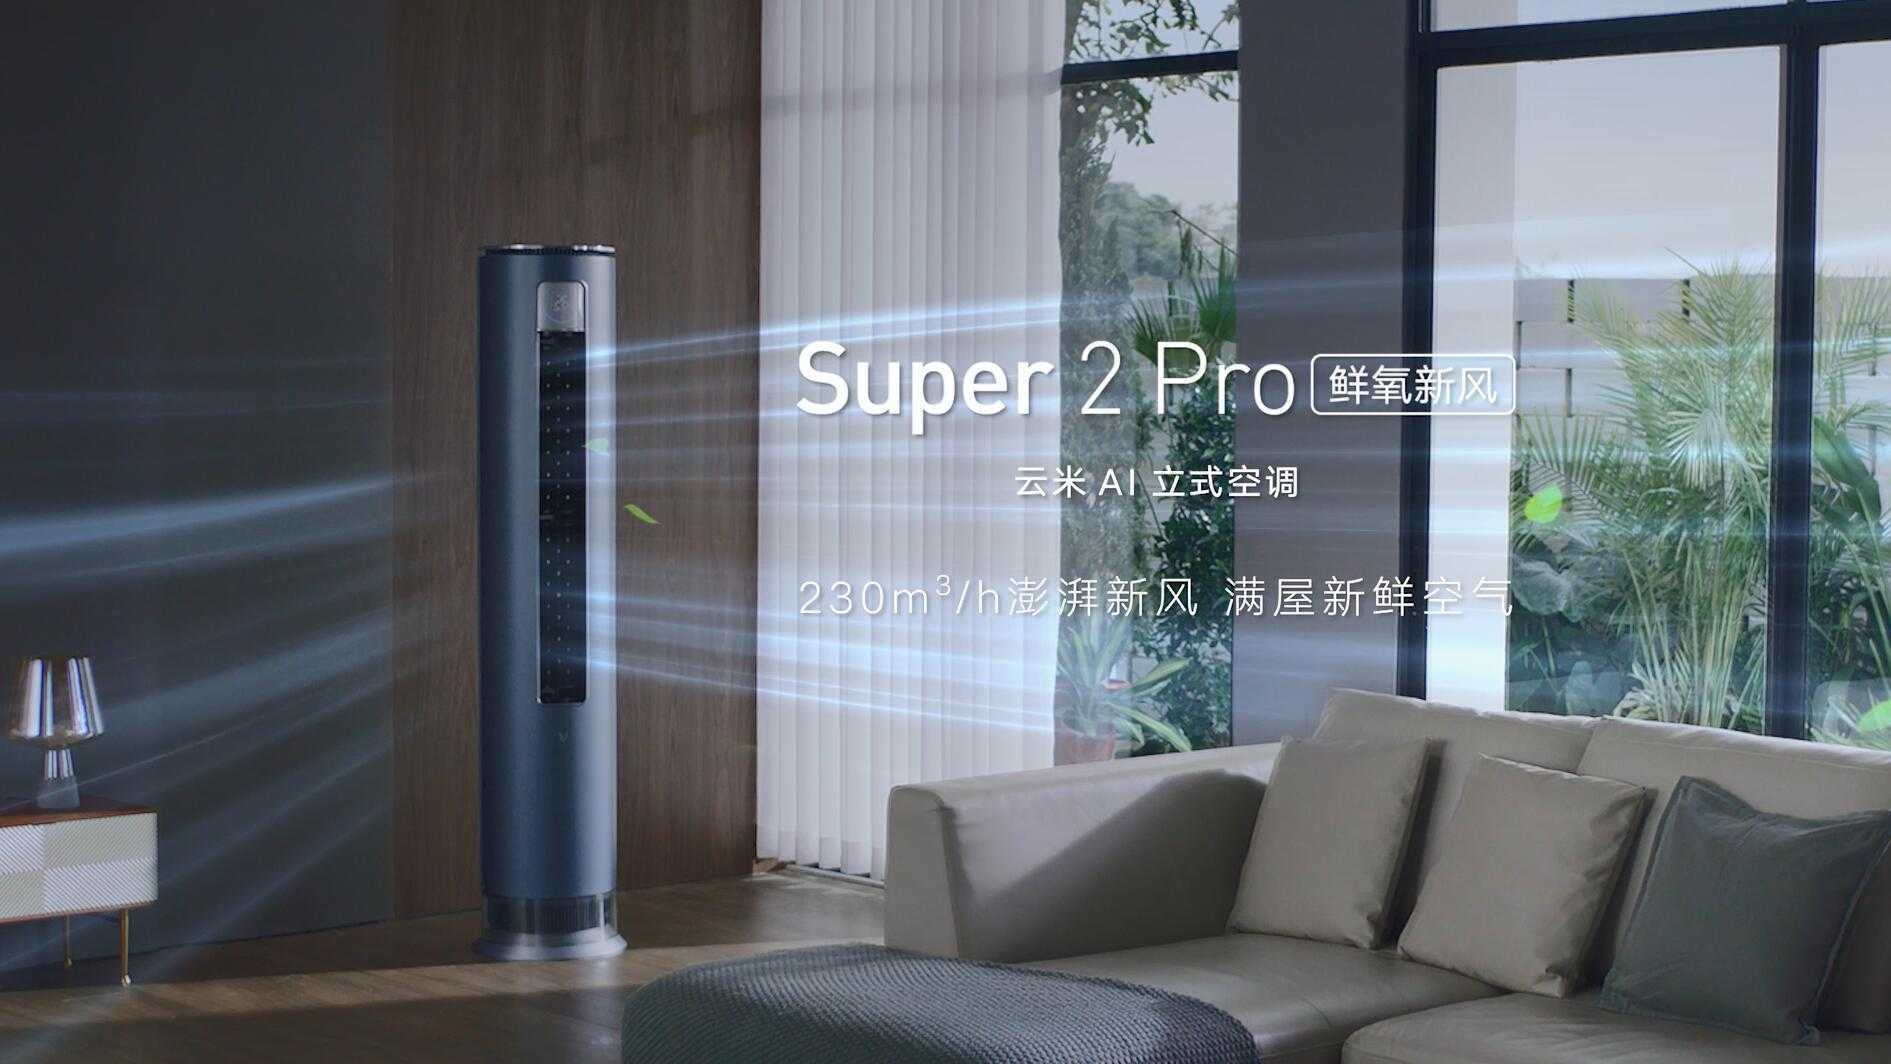 云米AI立式空调 Super 2 Pro产品视频